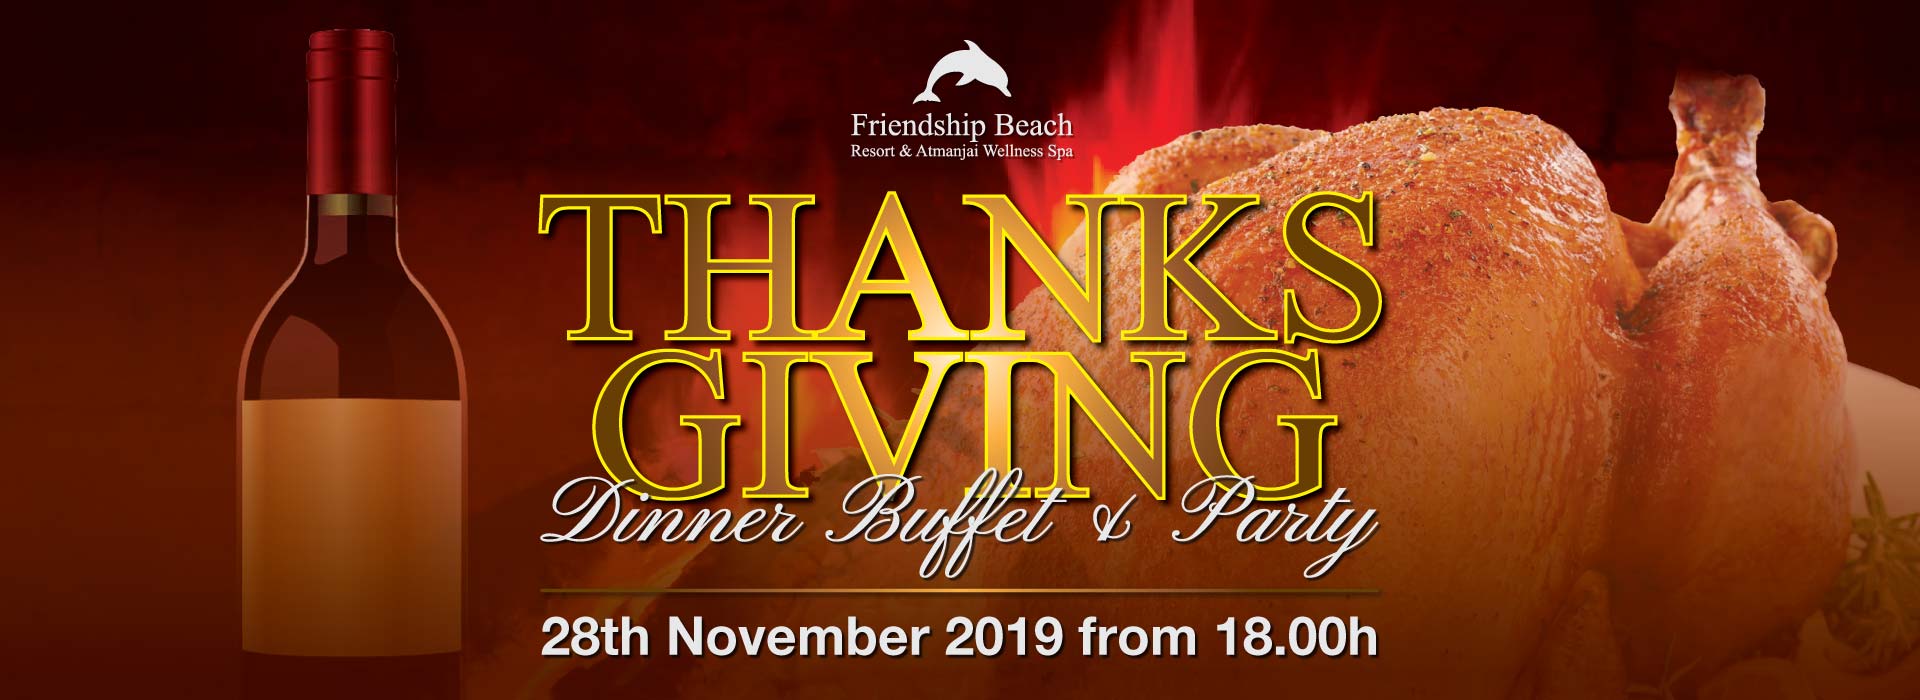 Thanksgiving Dinner Buffet & Party 2019